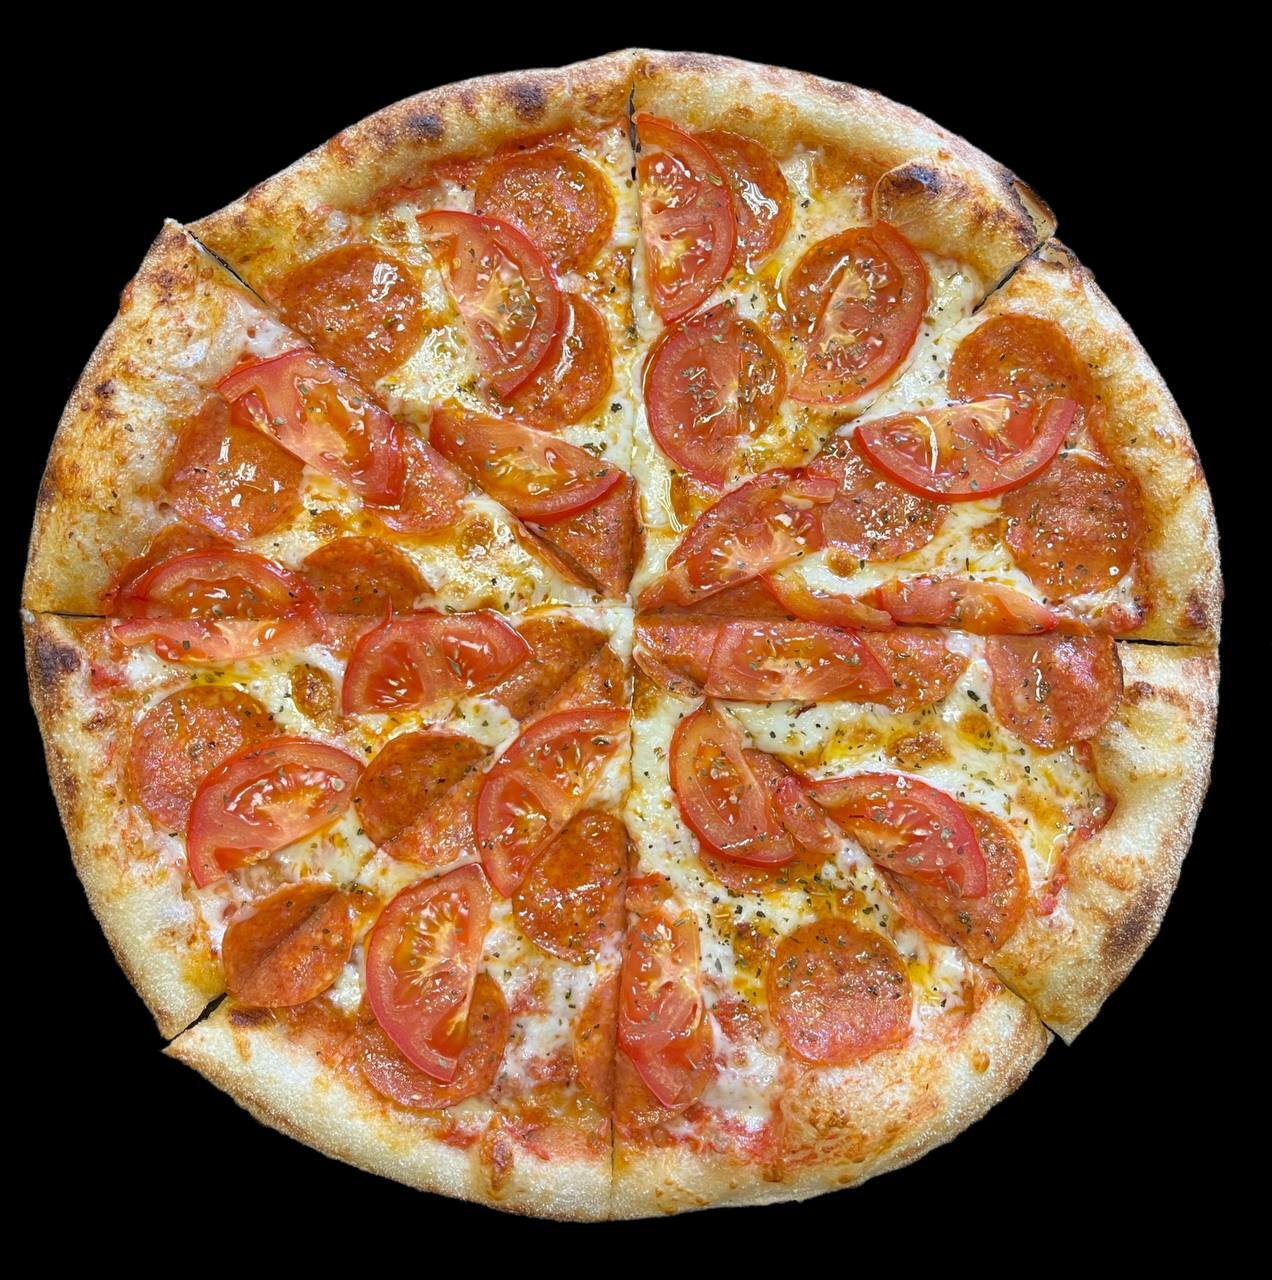 тони пепперони пицца фото 106